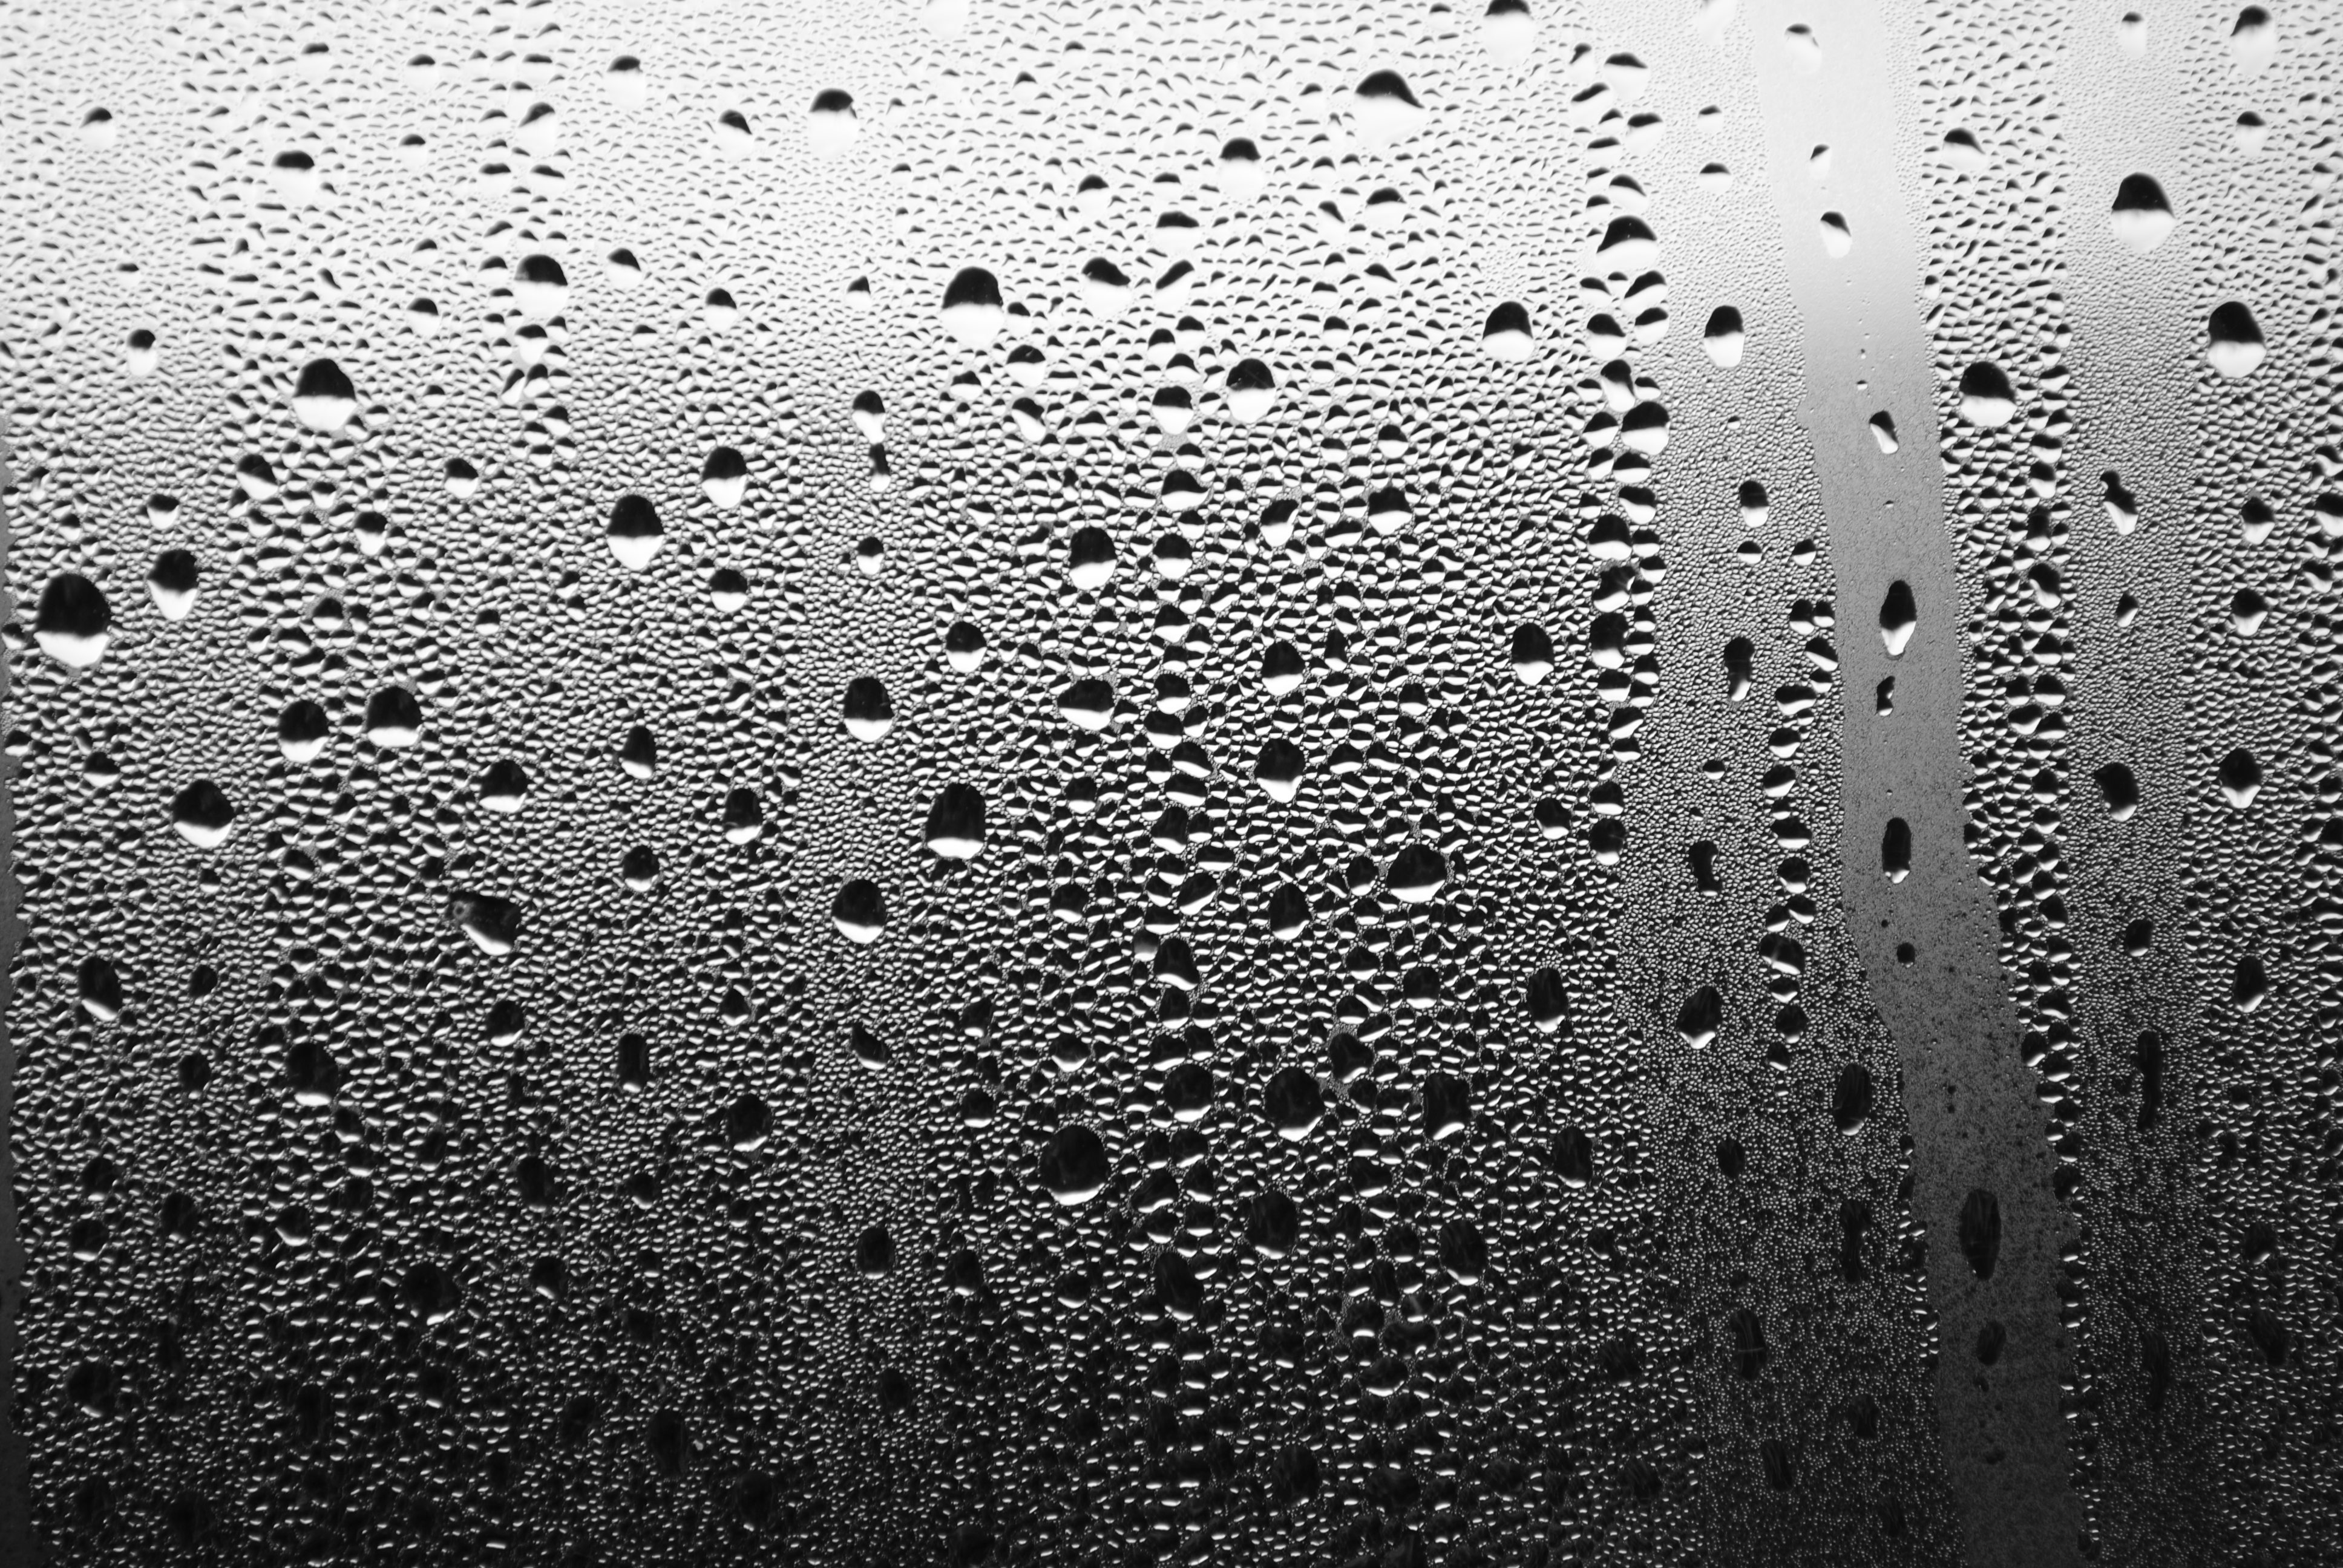 Water drops on window 2 by Petie-Barber on DeviantArt